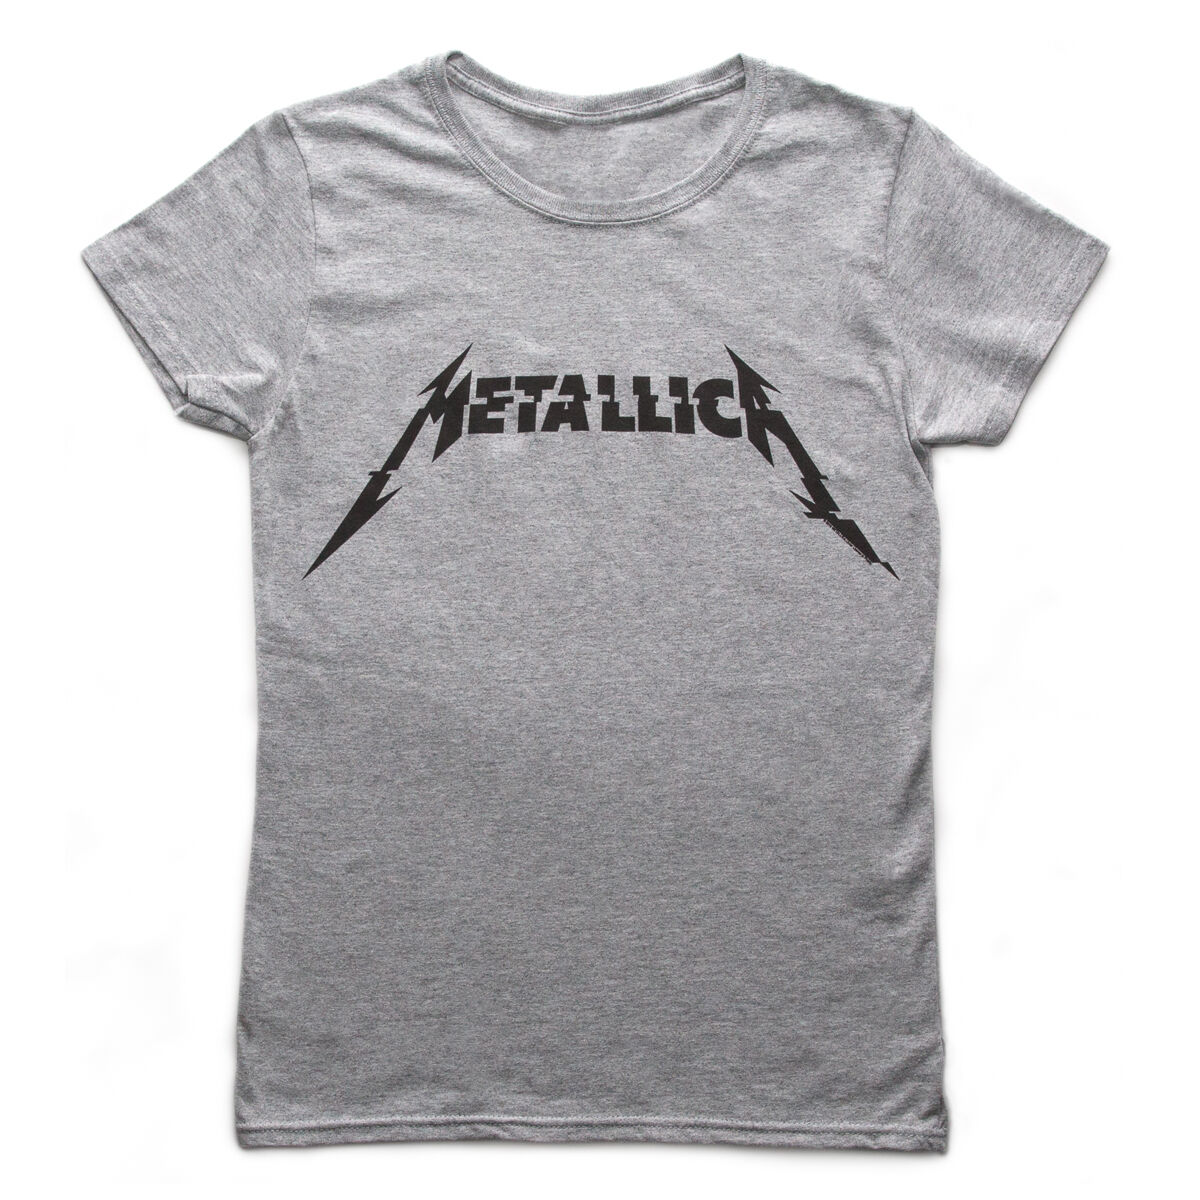 metallica t shirt womens